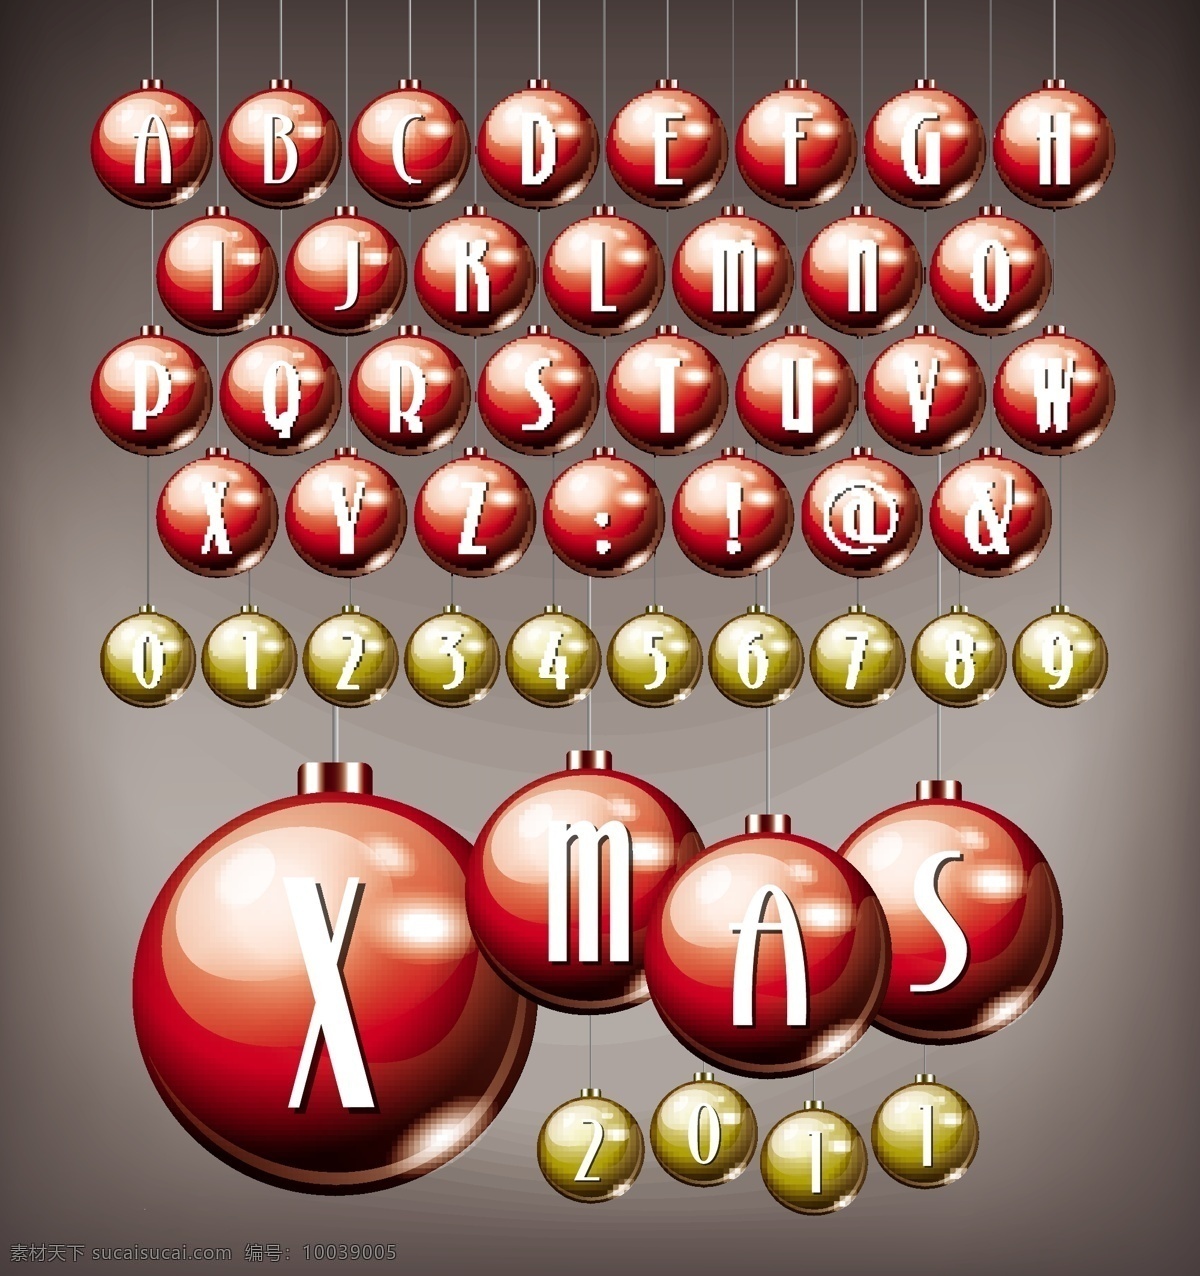 创意 英语 字母 矢量 球 数字 英文 炸弹 符号的灯笼 矢量图 艺术字